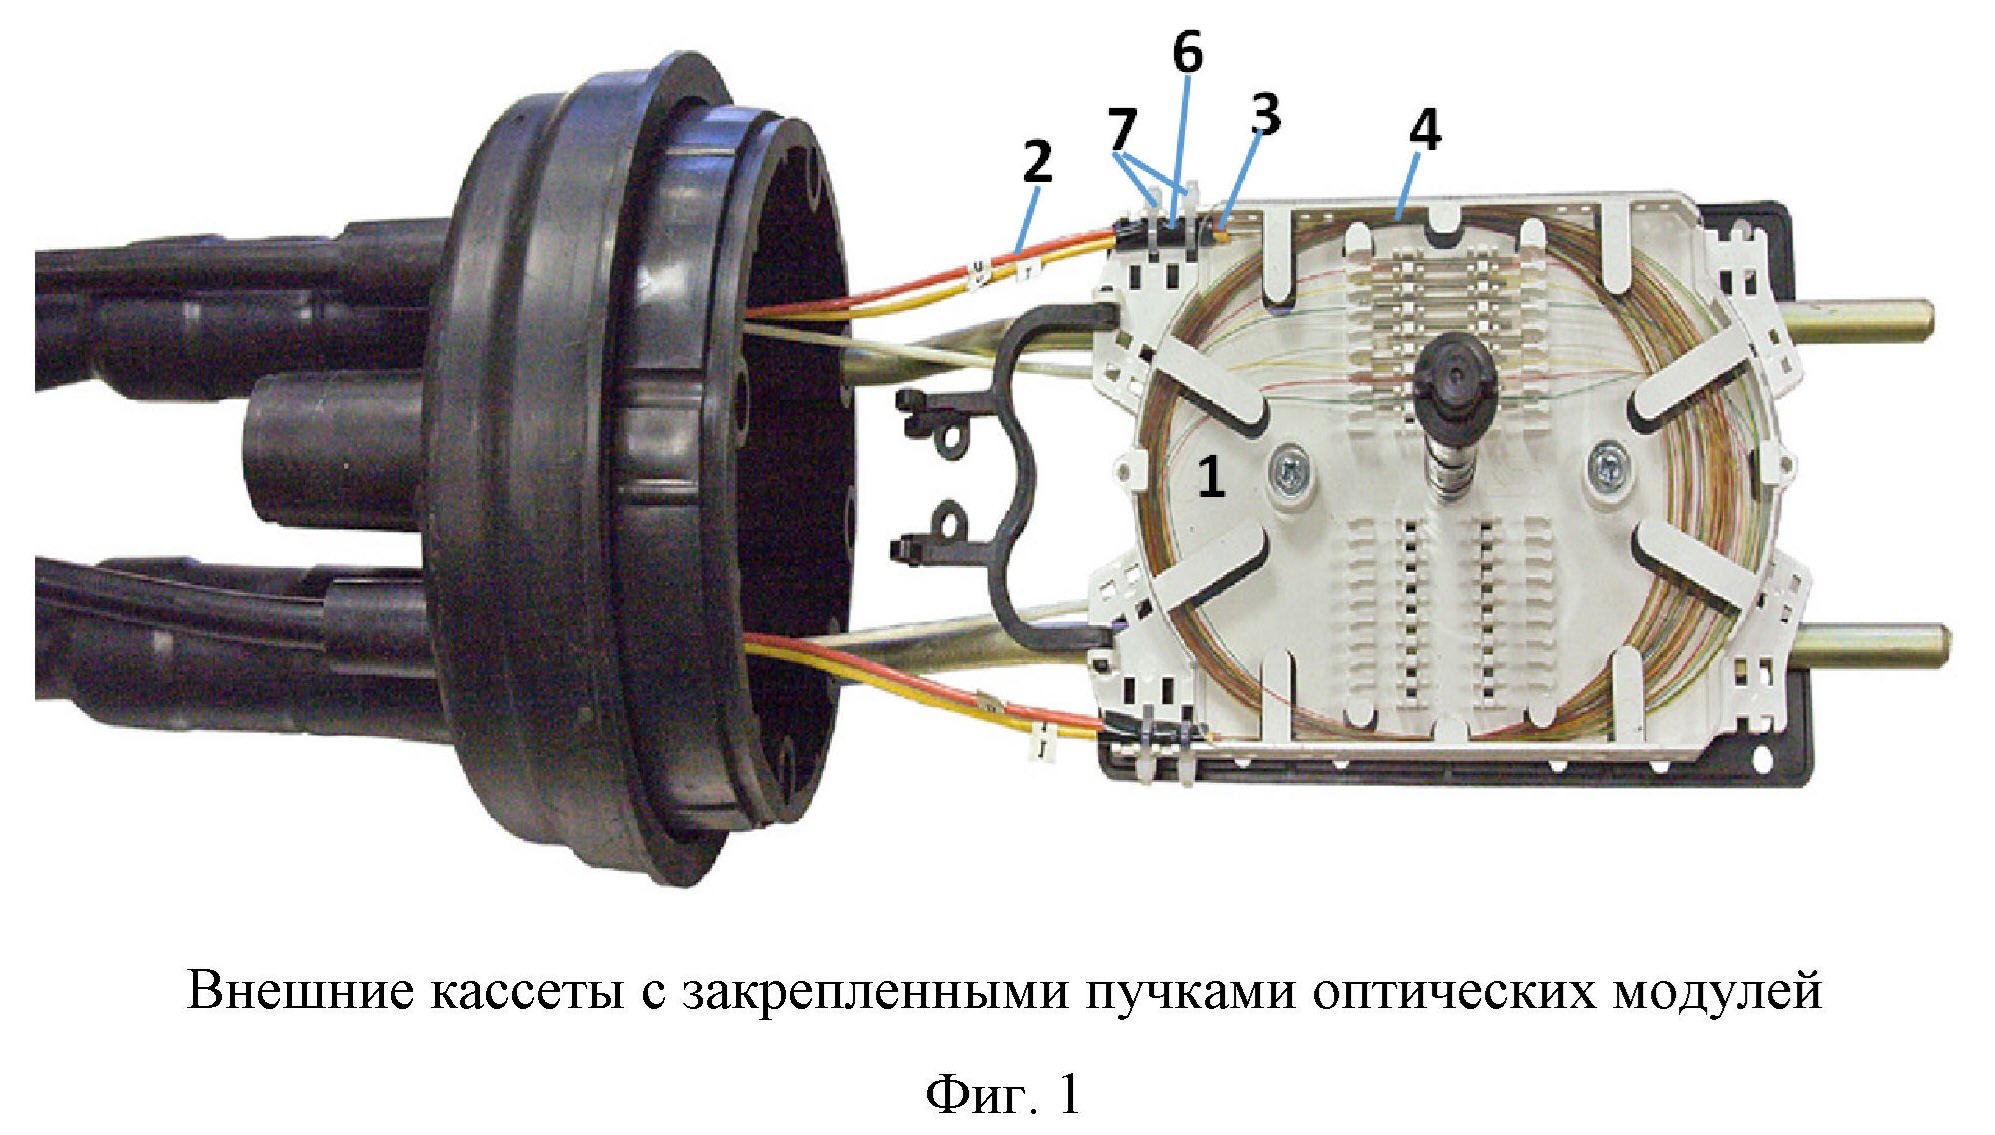 Схема проходной оптической муфты